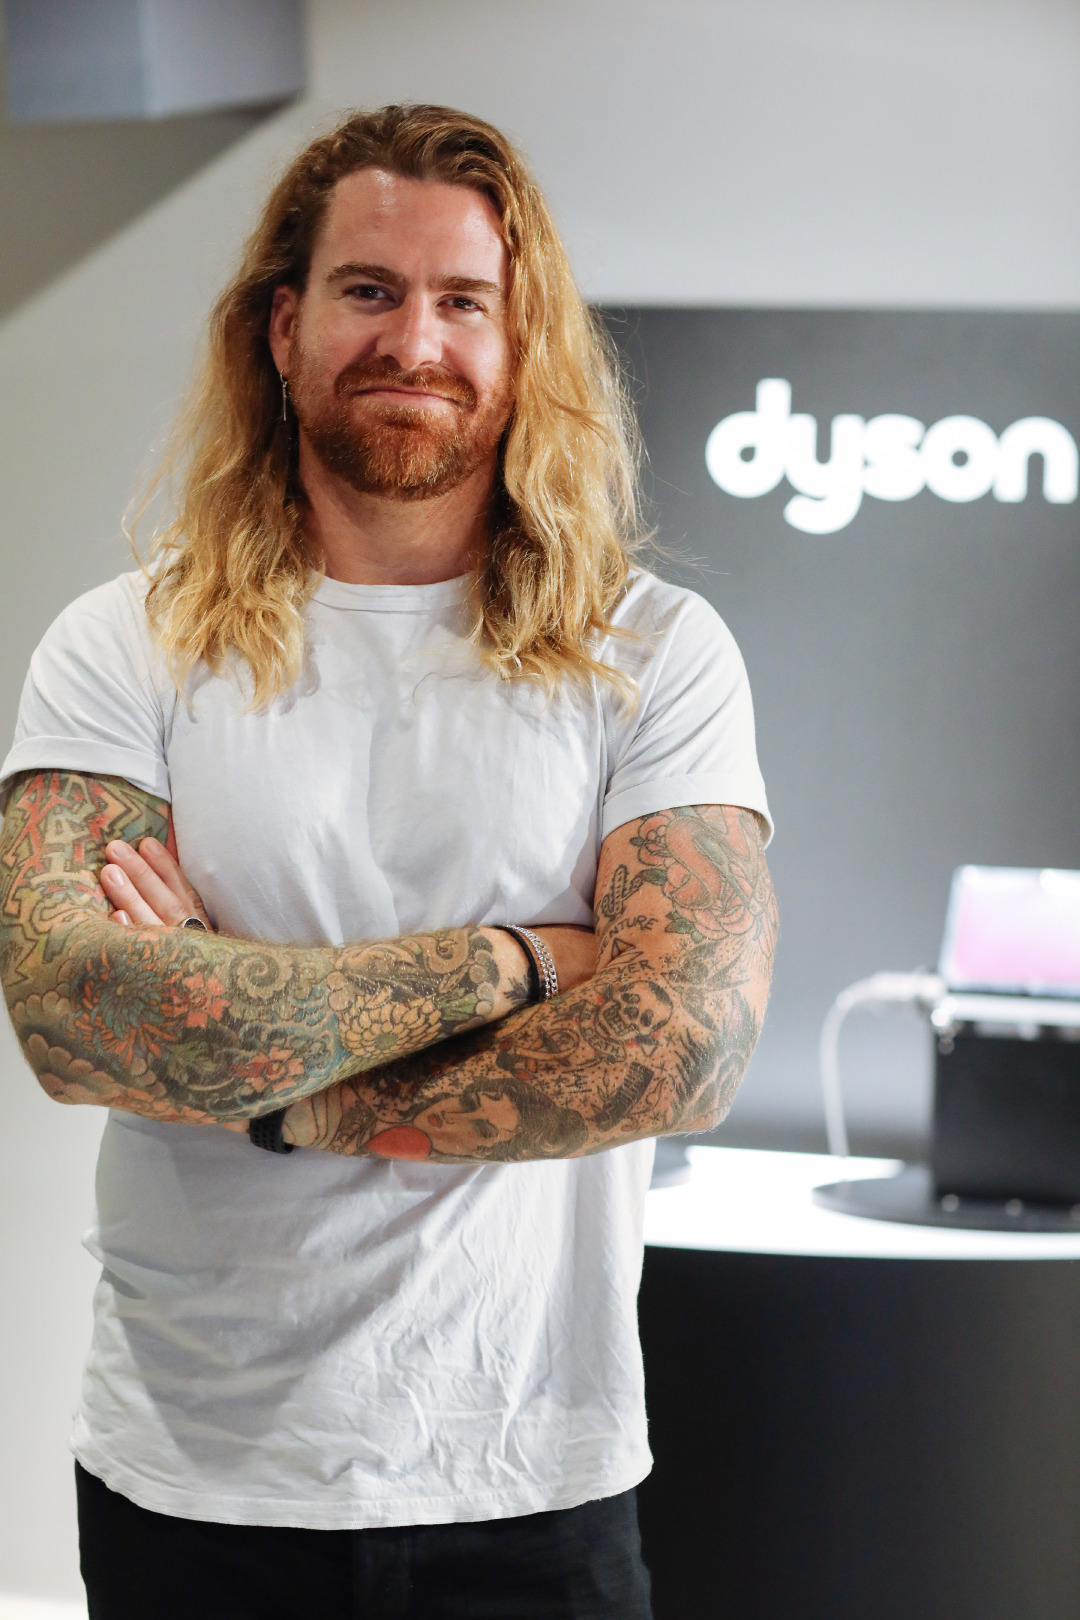 Dyson Global Marka Elçileri Matthew Collins ve Peter Thomsen ile Buluştuk